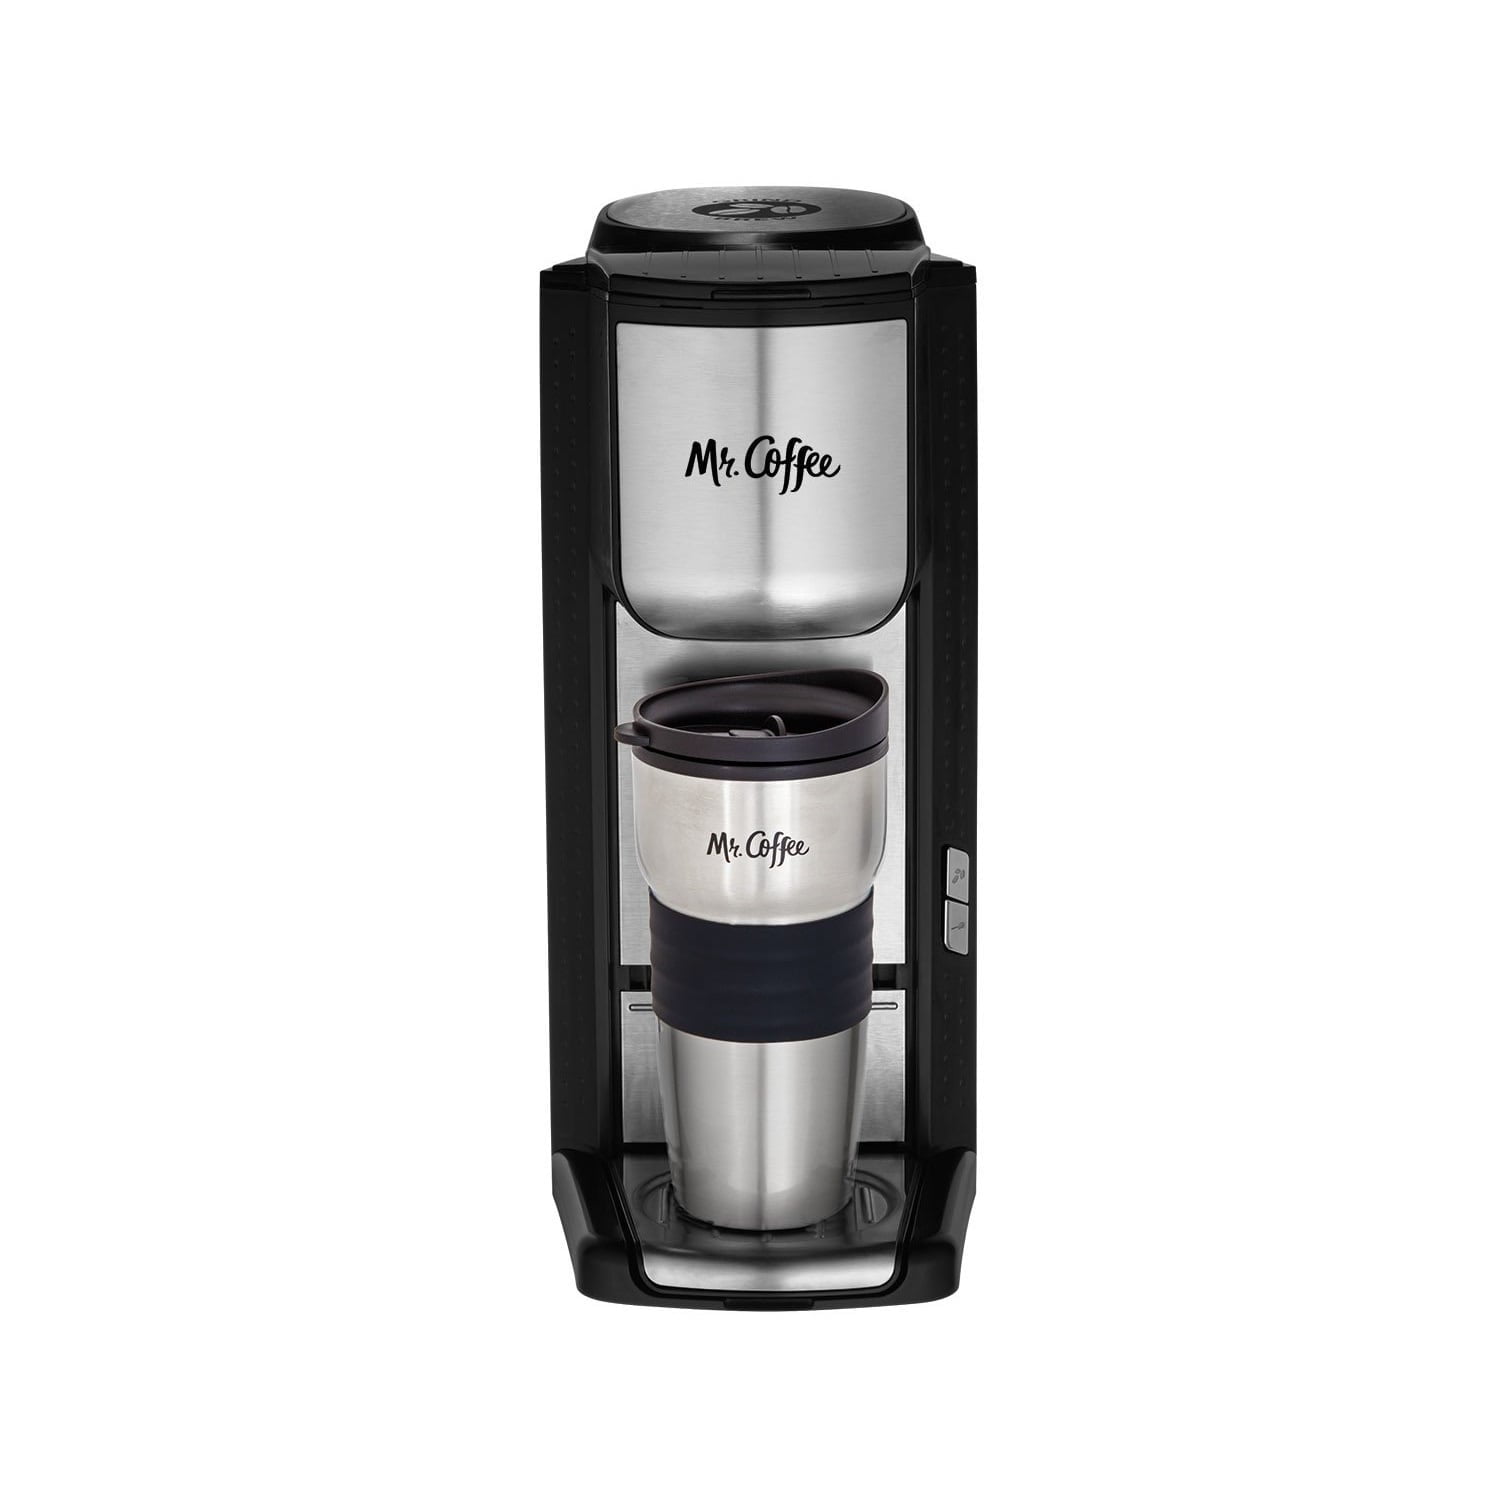 Mr. Coffee Single-Cup Coffeemaker Silver/Black BVMC-SC100 - Best Buy